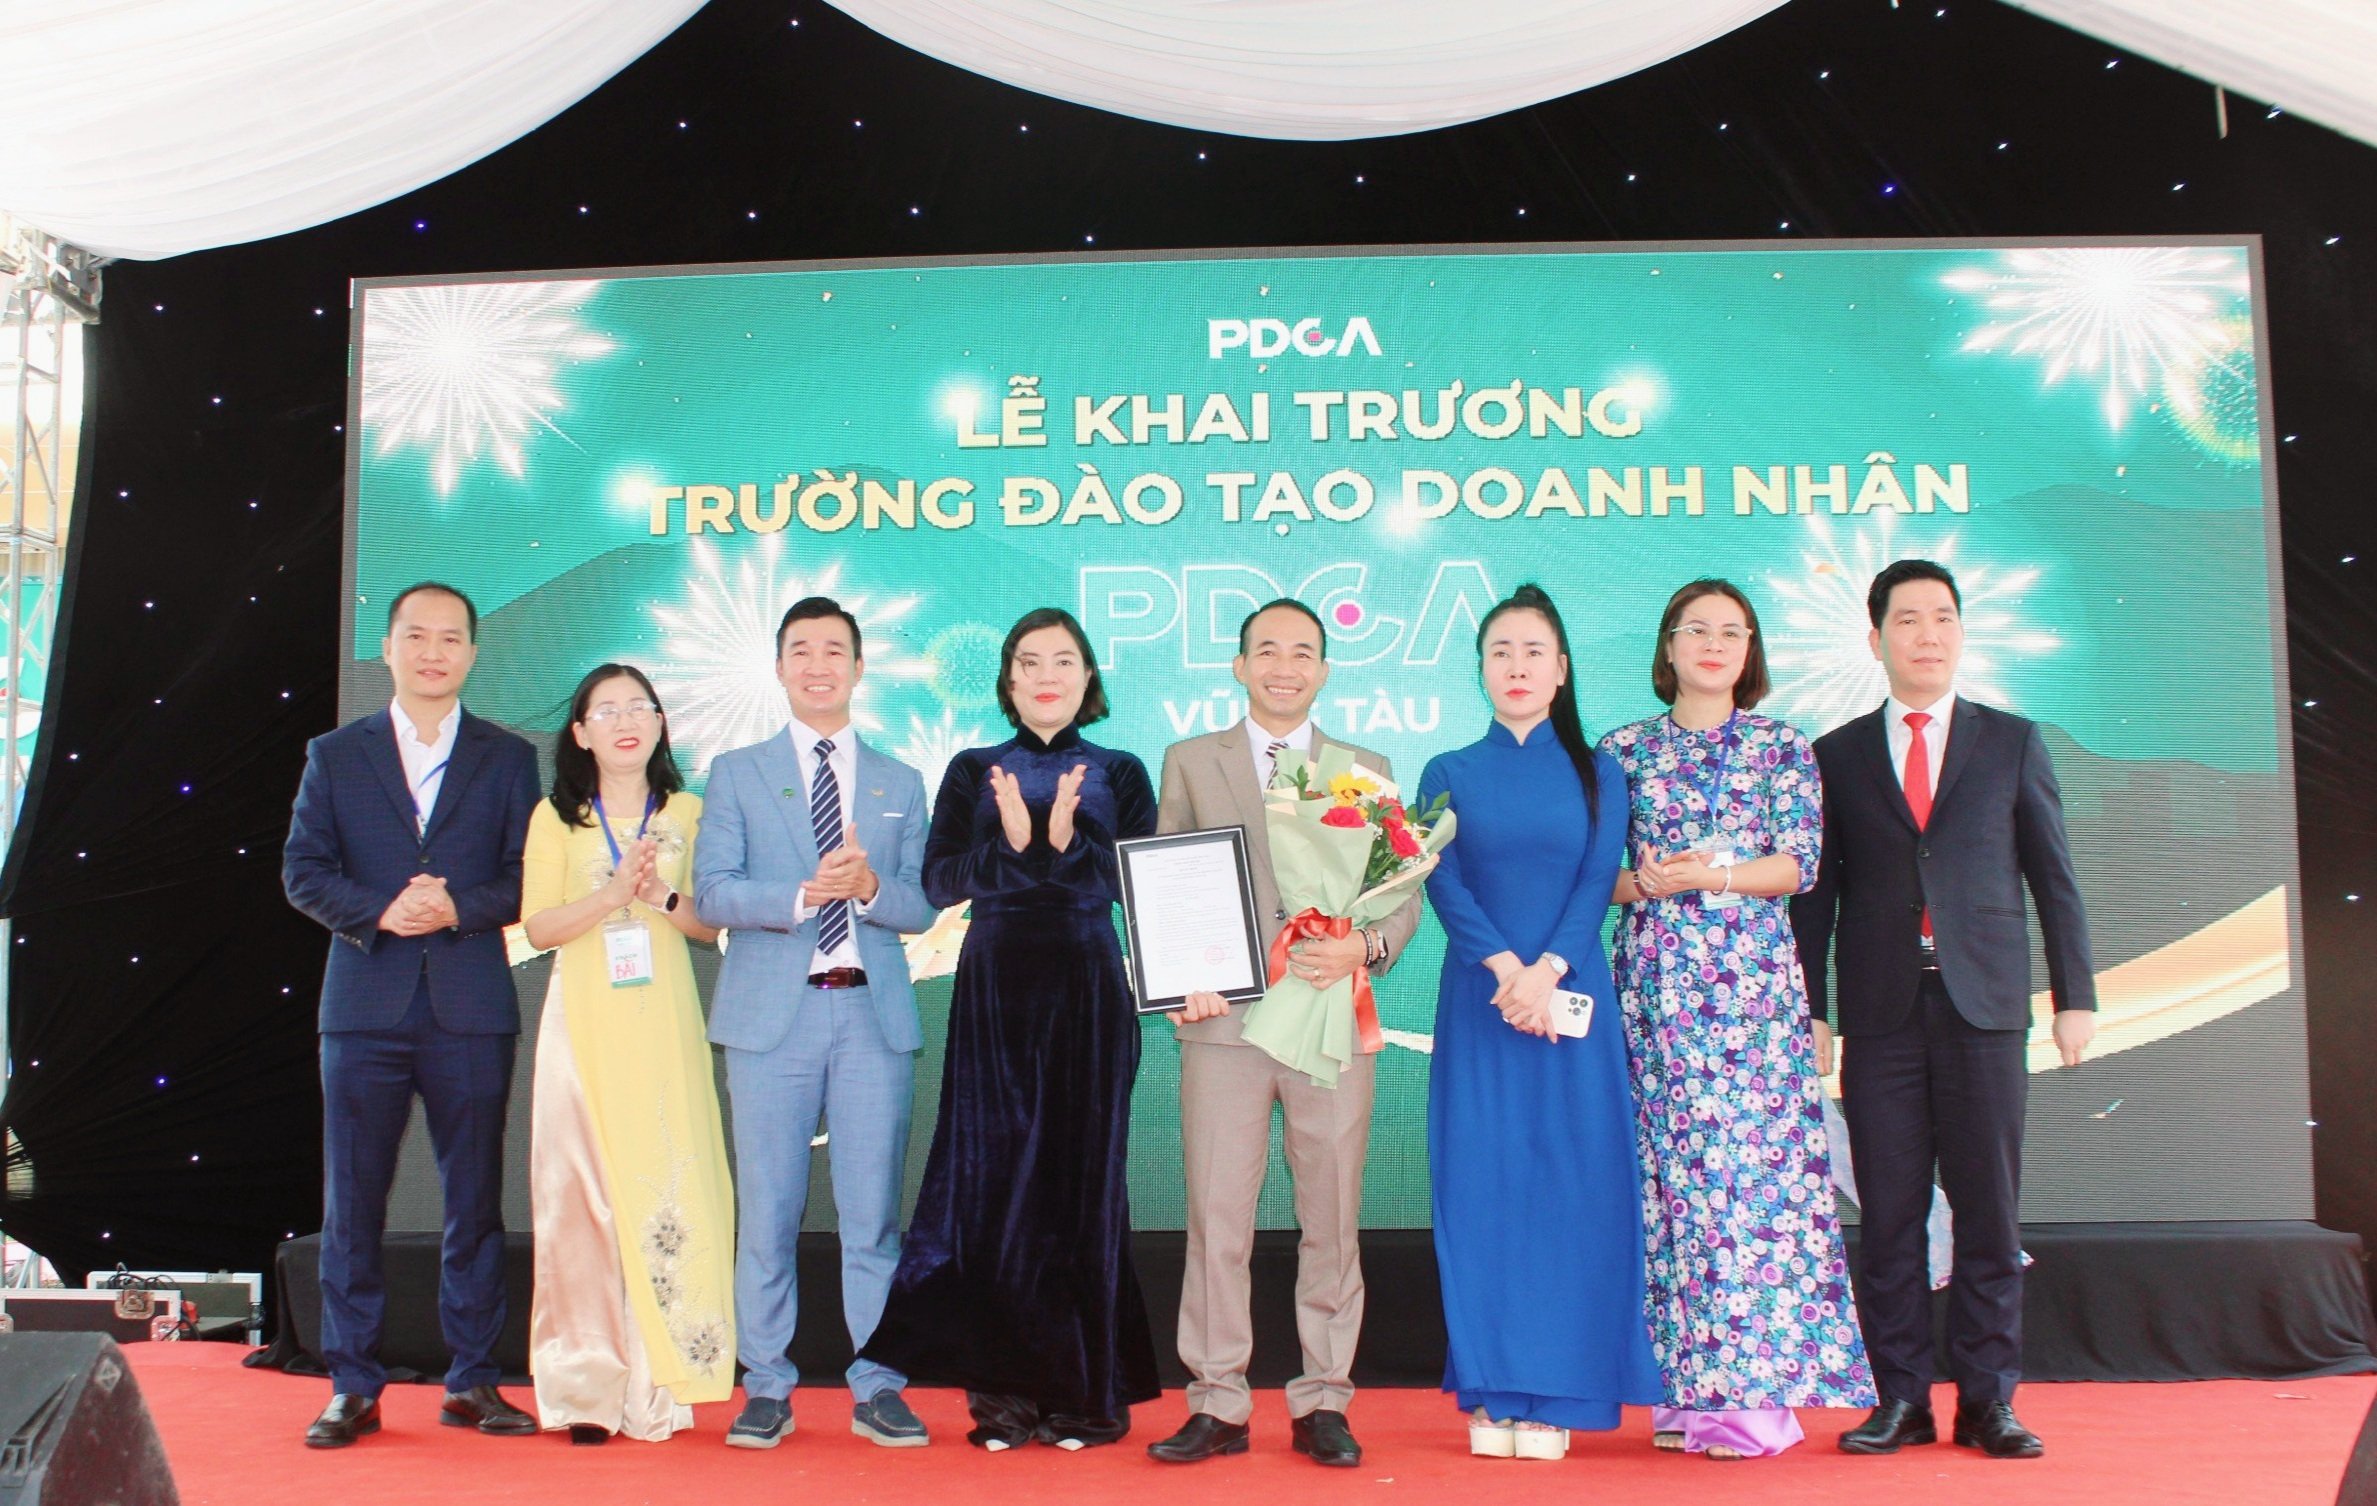 Ông Vũ Văn Thanh, Tổng giám đốc PDCA Vũng Tàu nhận Quyết định thành lập chi nhánh.